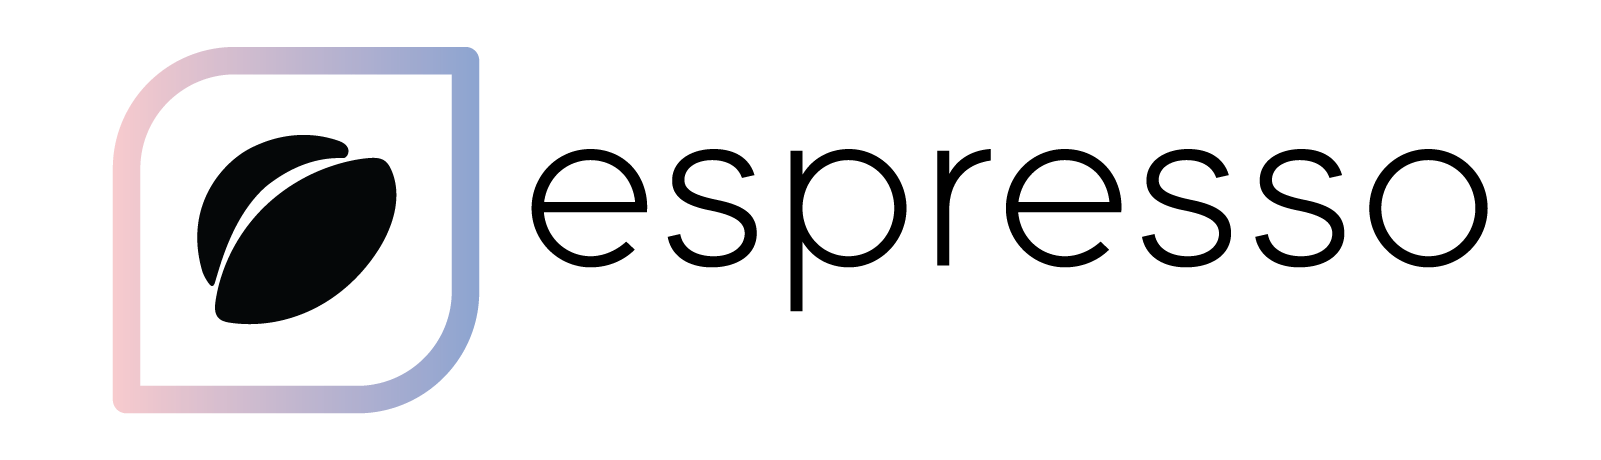 Espresso Logo - 2017-espresso-logo - Espresso Marketing